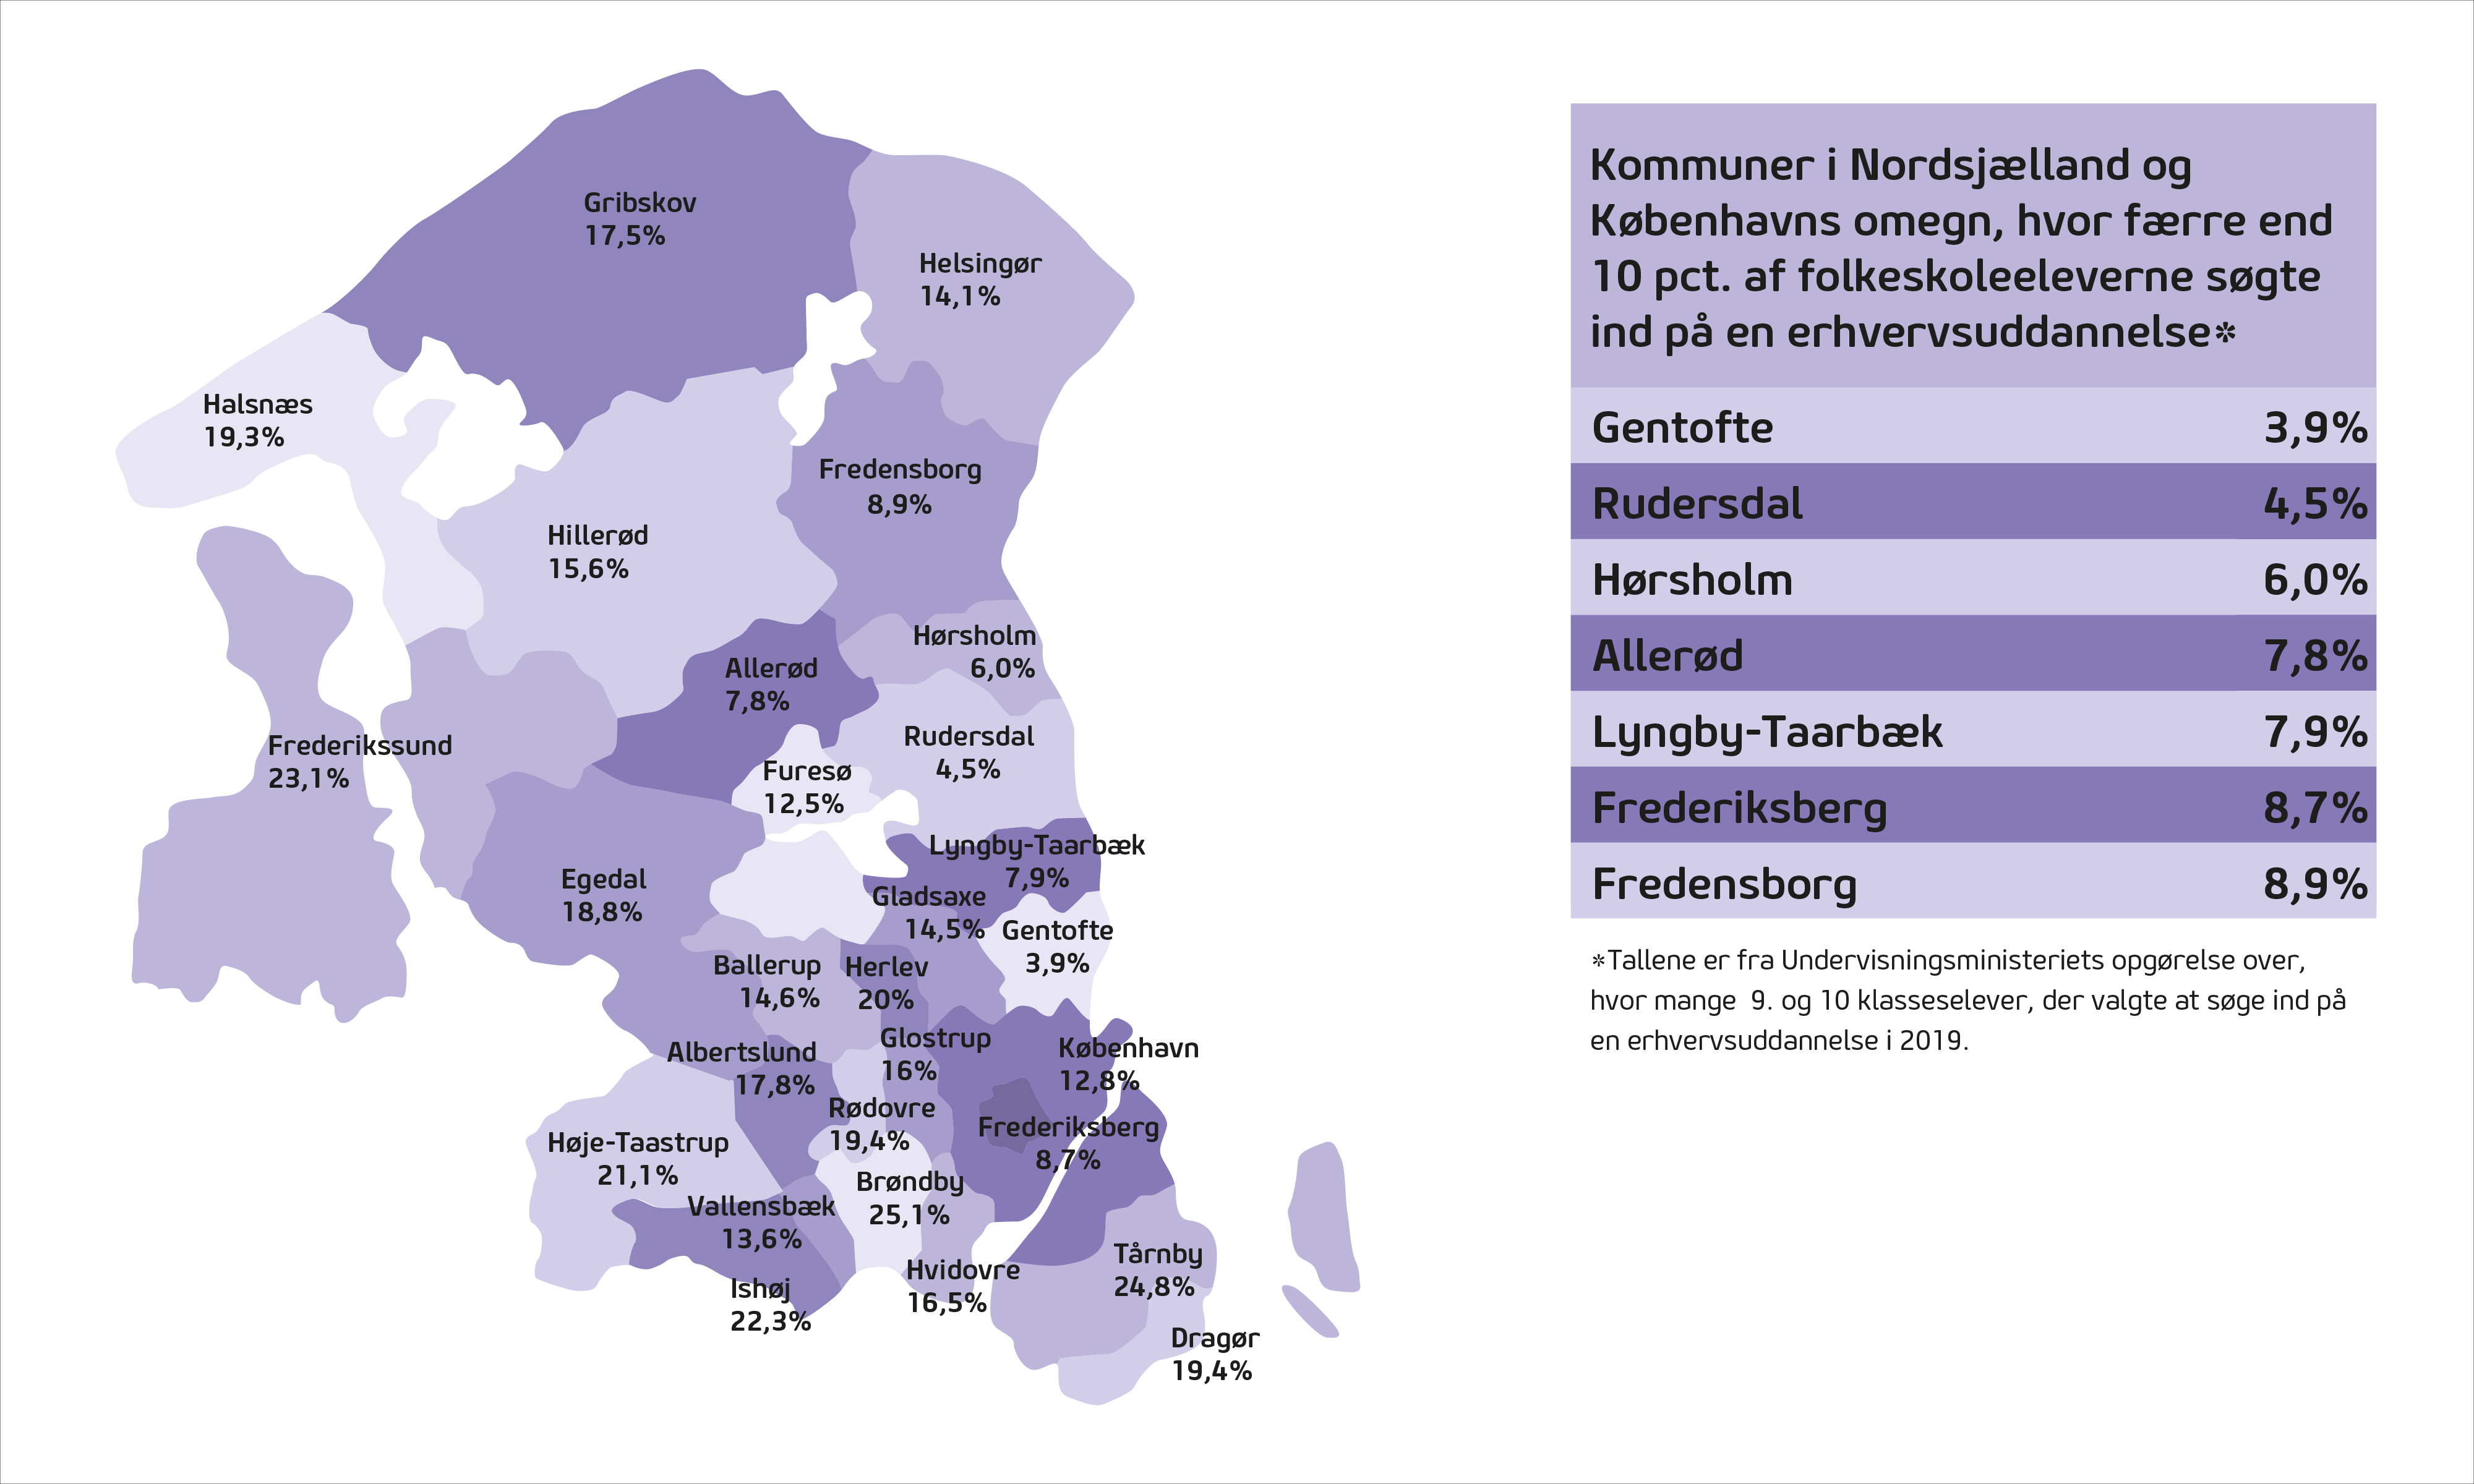 Det er især i de nordsjællandske kommuner, at der er alt for få folkeskoleelever, der søger en erhvervsuddannelse. Kun 3,9 pct. af eleverne i Gentofte søgte en erhvervsuddannelse i 2019. 